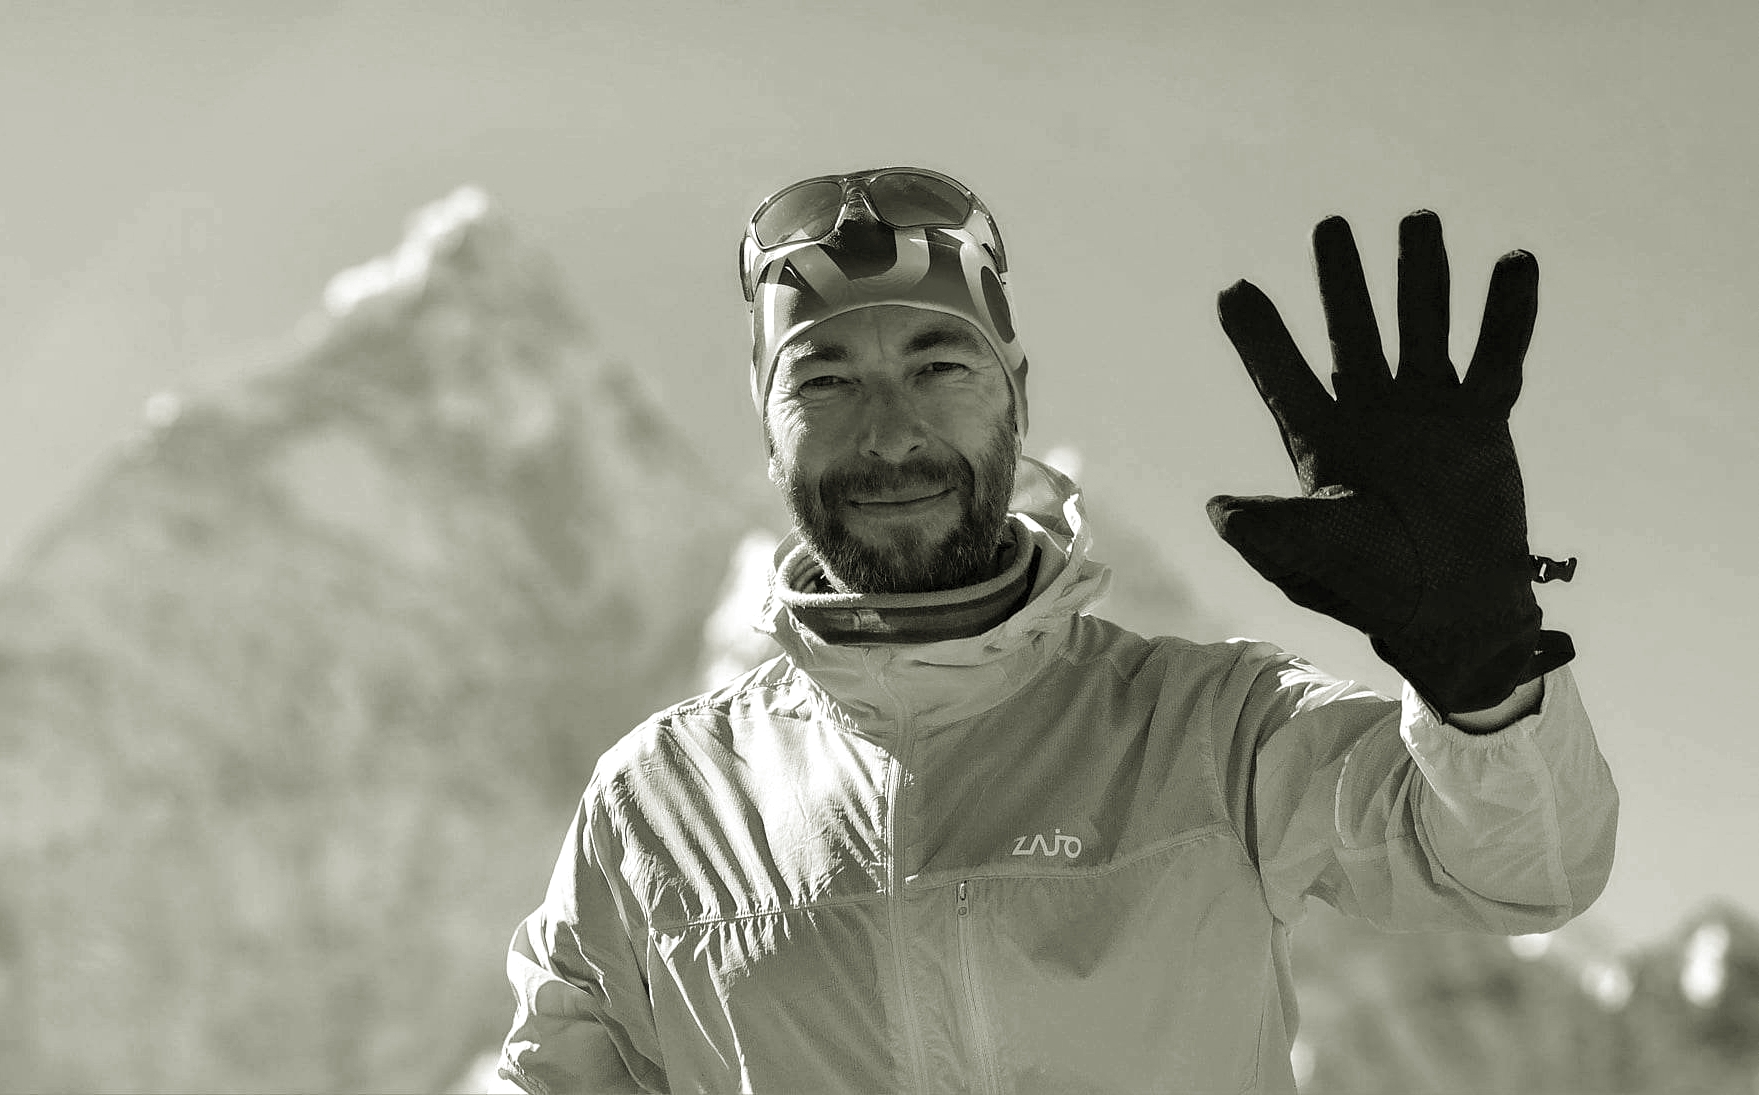 Hoffnungen bei der Suche nach dem vermissten Bergsteiger auf dem Mount Everest zerschlagen